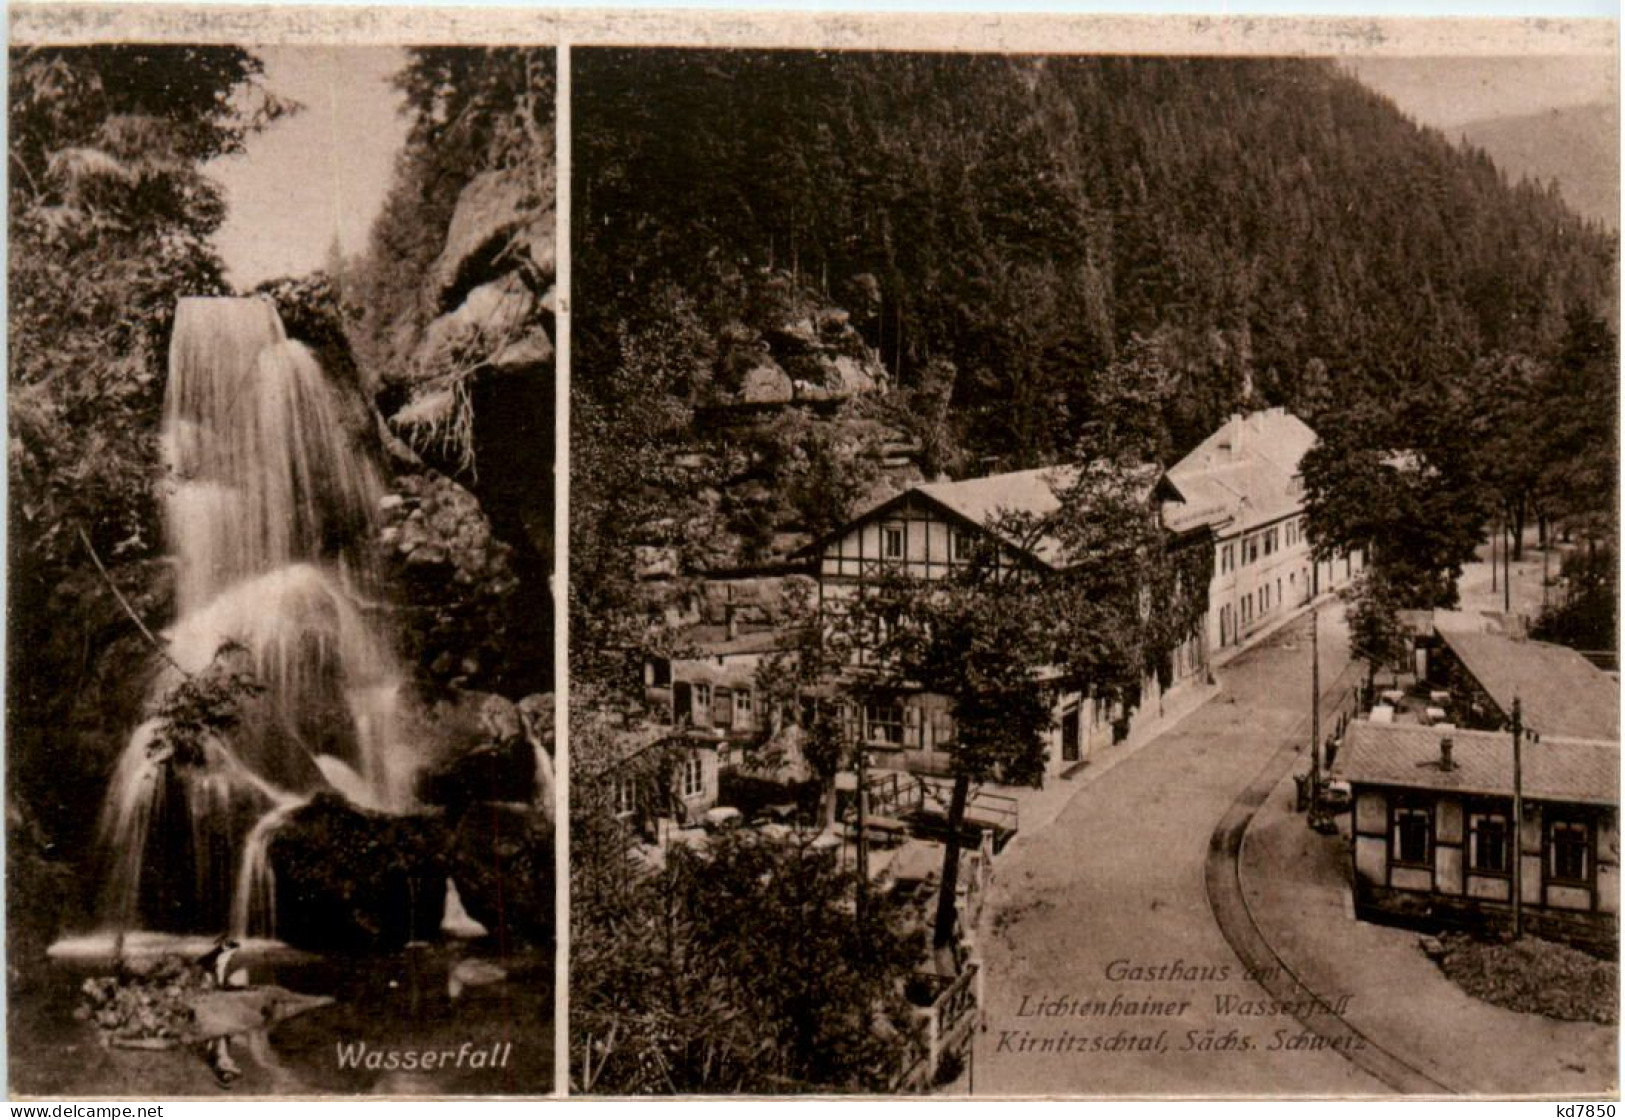 Lichtenhainer Wasserfall - Kirnitzschtal - Sebnitz